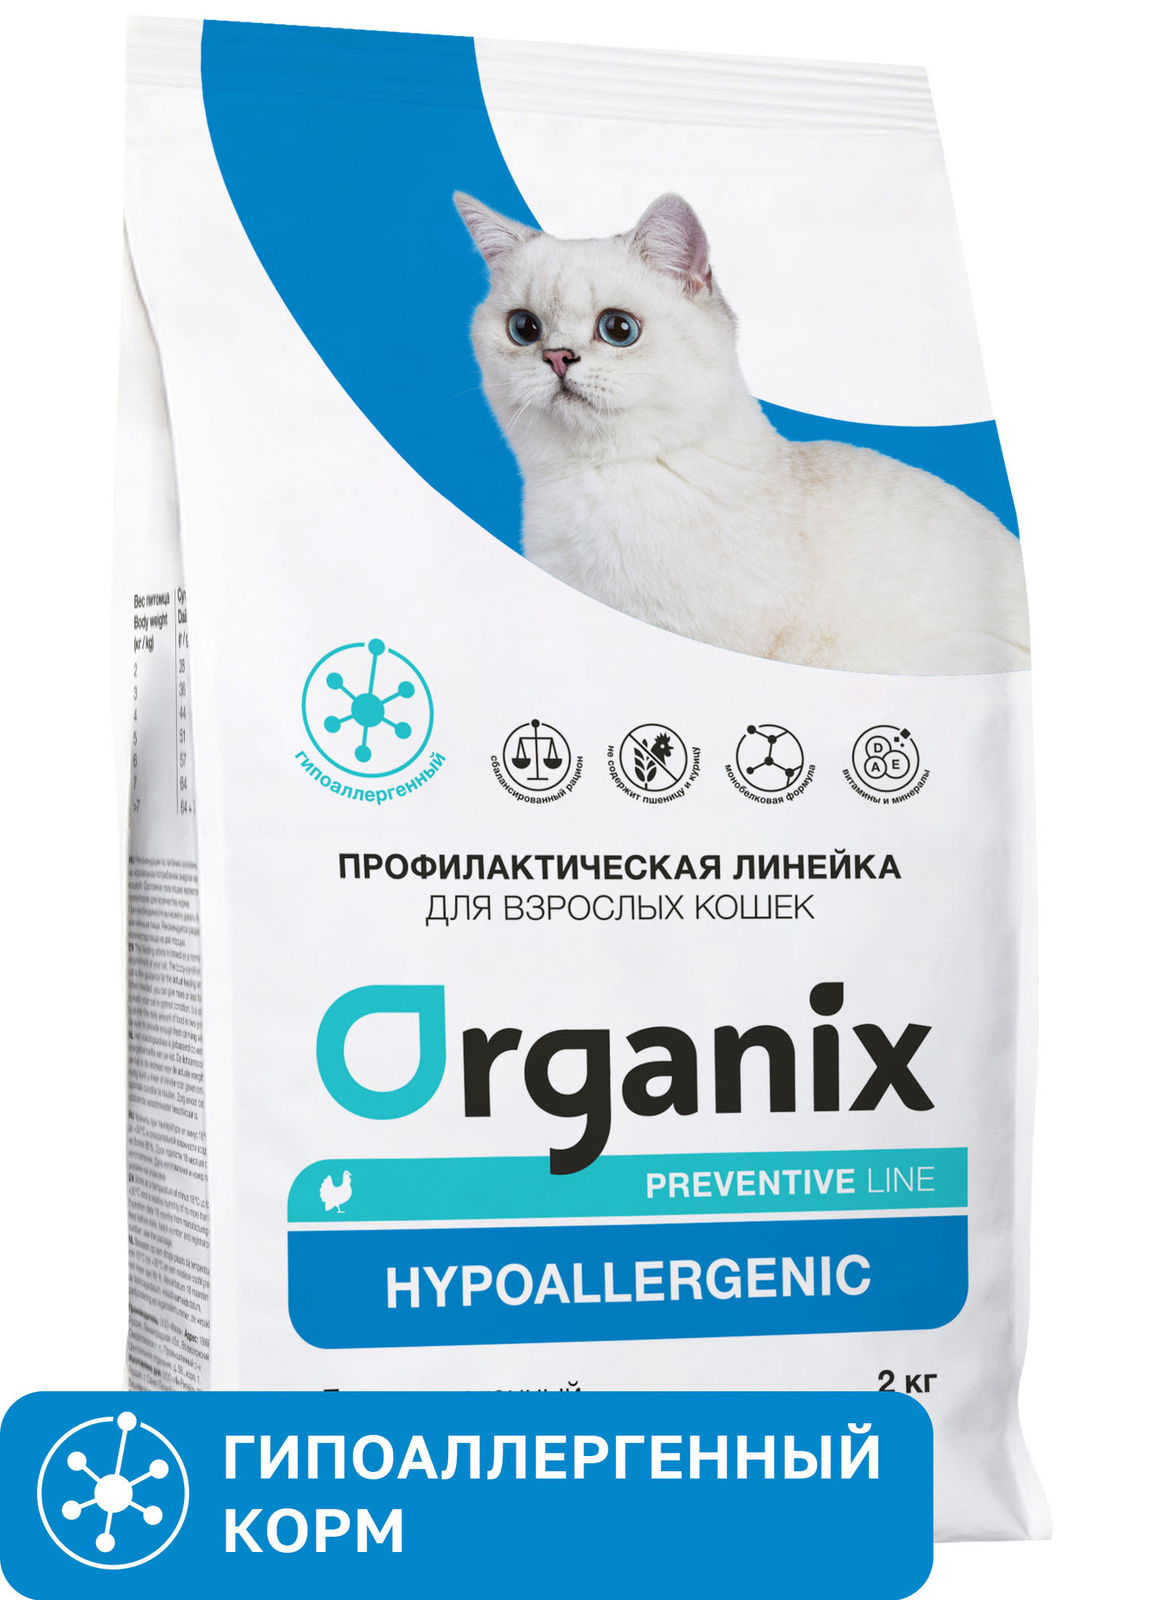 Organix Preventive Line Organix Preventive Line hypoallergenic сухой корм для кошек Гипоаллергенный (600 г) organix preventive line organix preventive line hepatic сухой корм для кошек поддержание здоровья печени 600 г